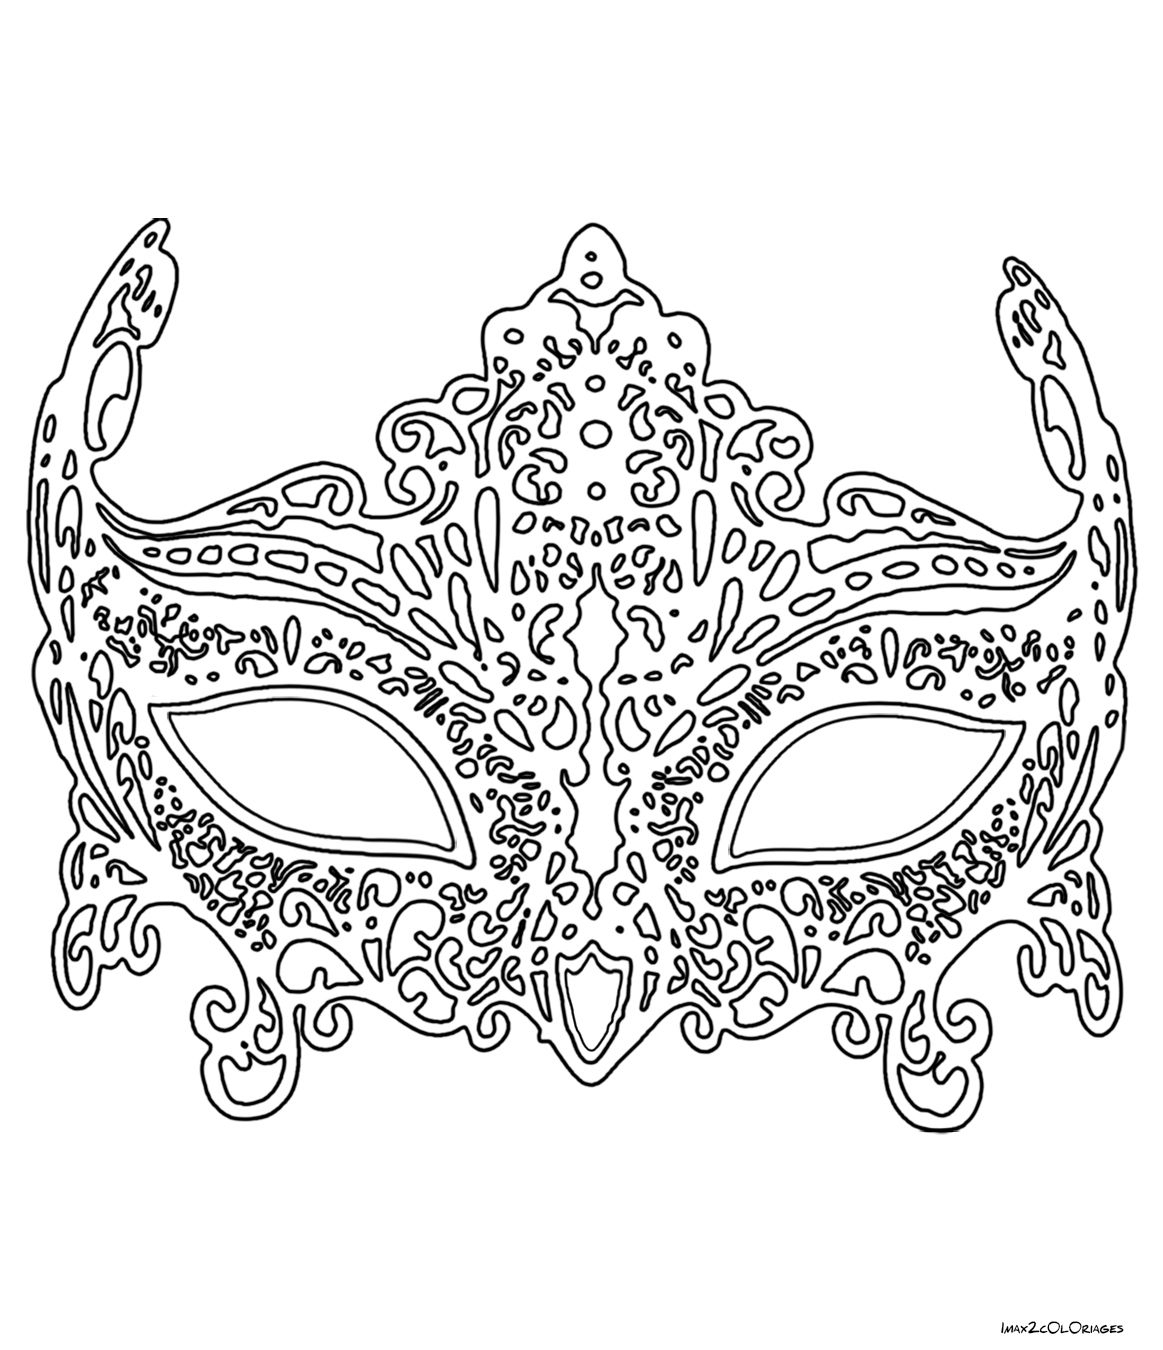 Élégant Coloriage De Masque De Carnaval A Imprimer | Des Milliers De à Dessin Carnaval A Imprimer